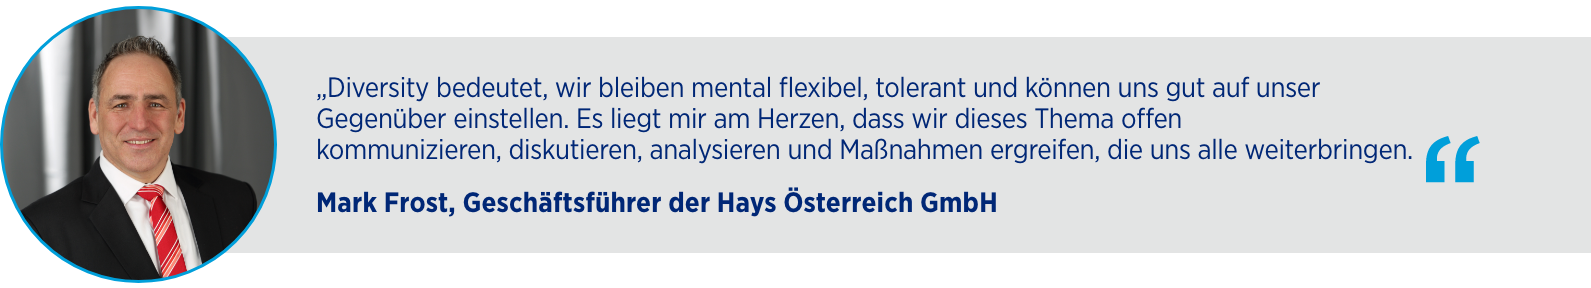 Mark Frost, Geschäftsführer Hays Österreich GmbH